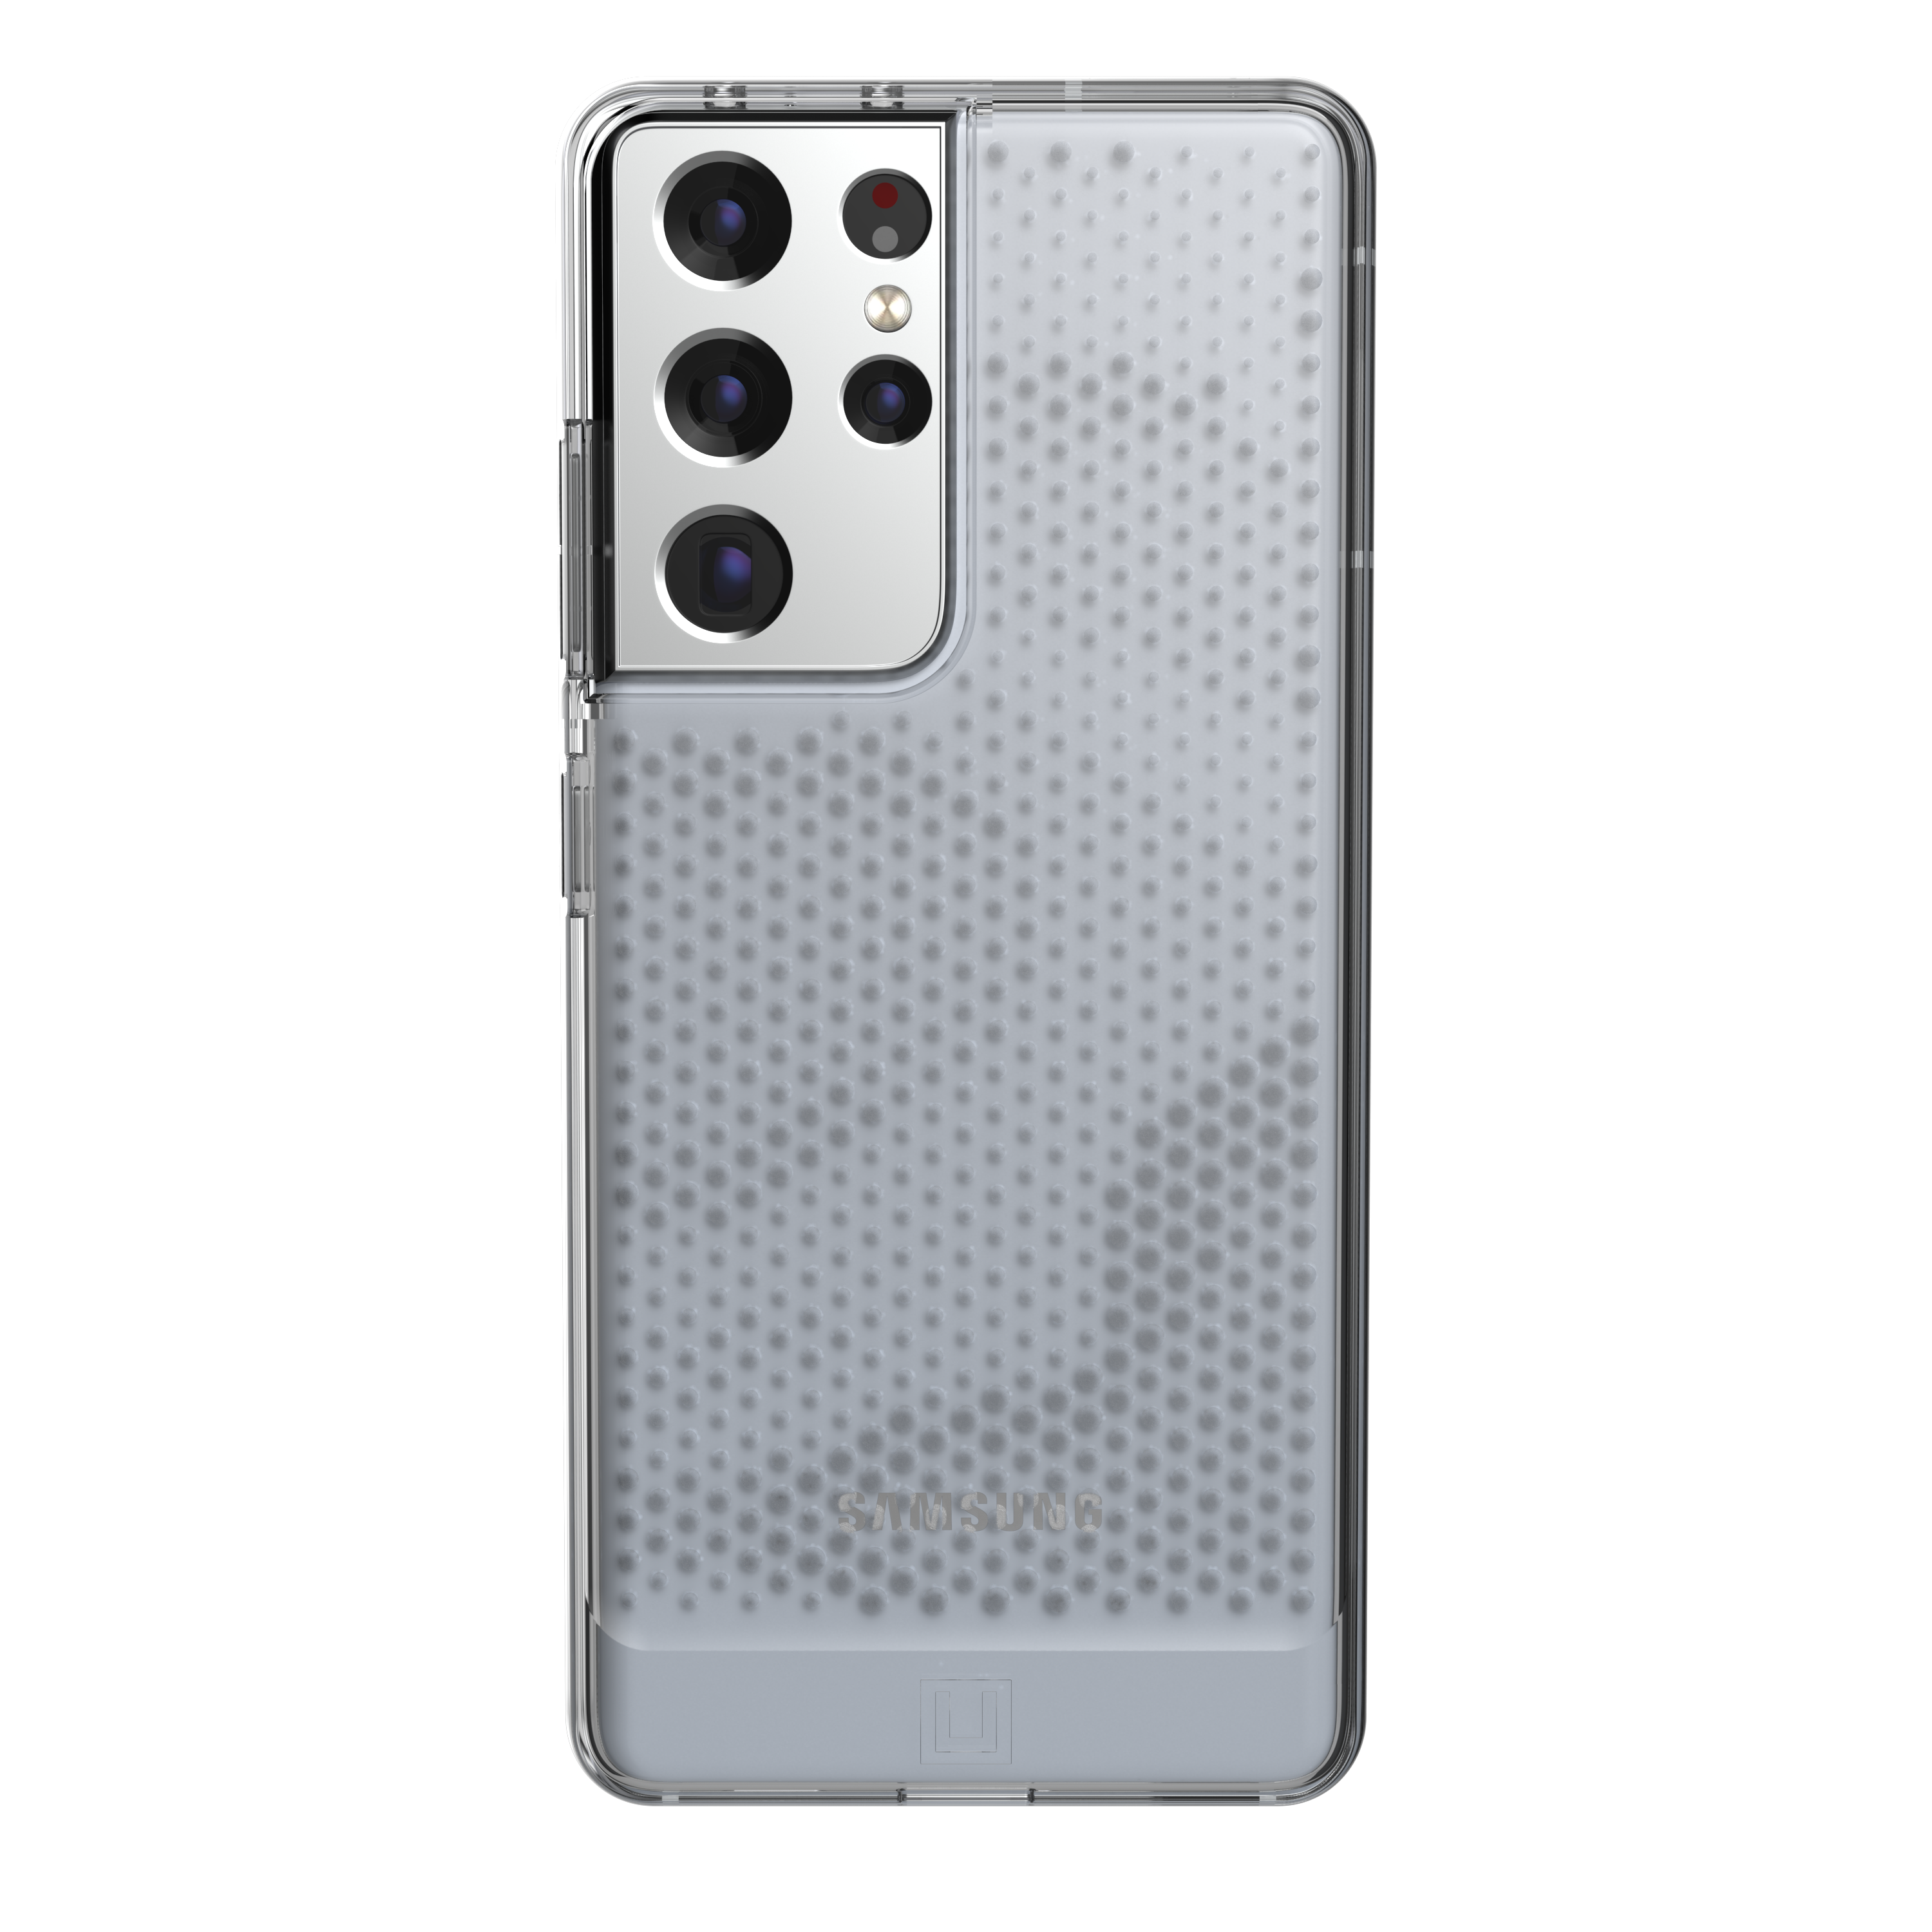 Funda [U] by UAG serie Lucent para el Samsung Galaxy S21 5G